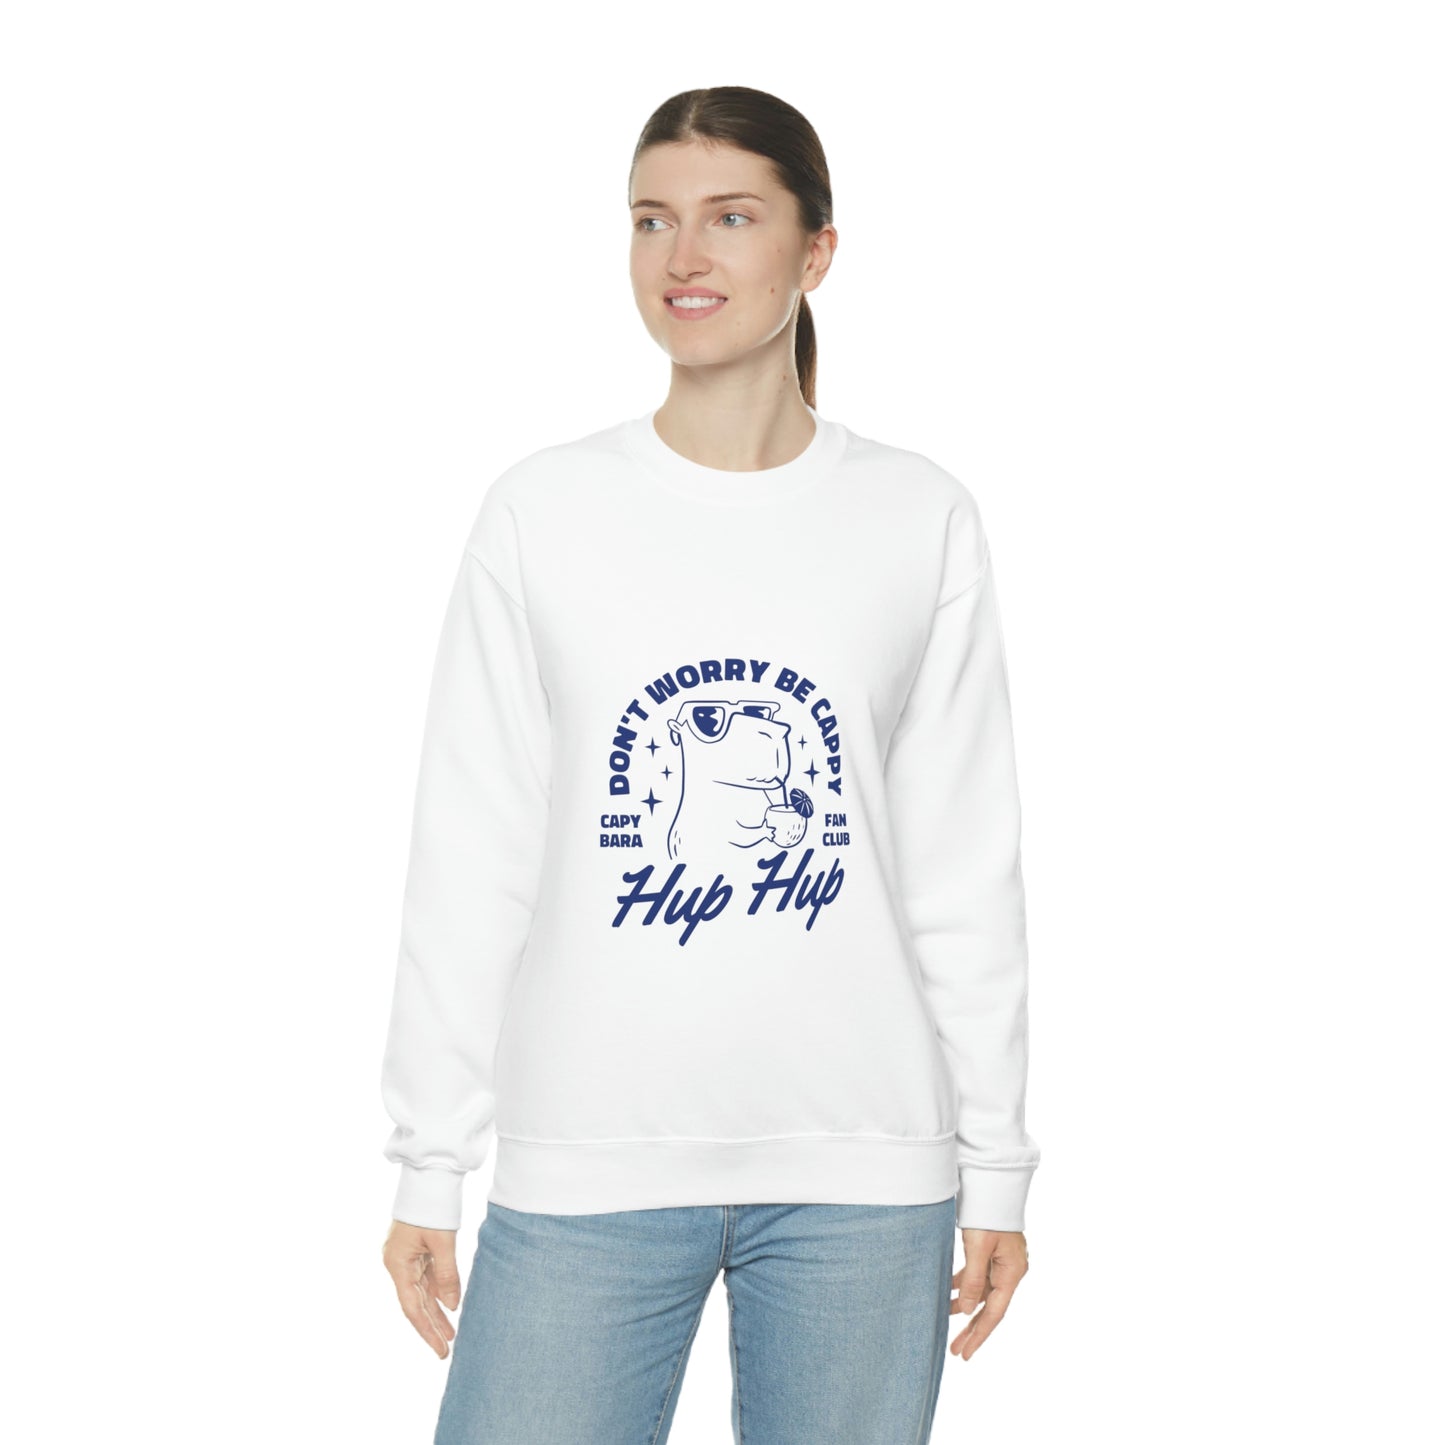 Hup Hup Capybara - Unisex Sweatshirt